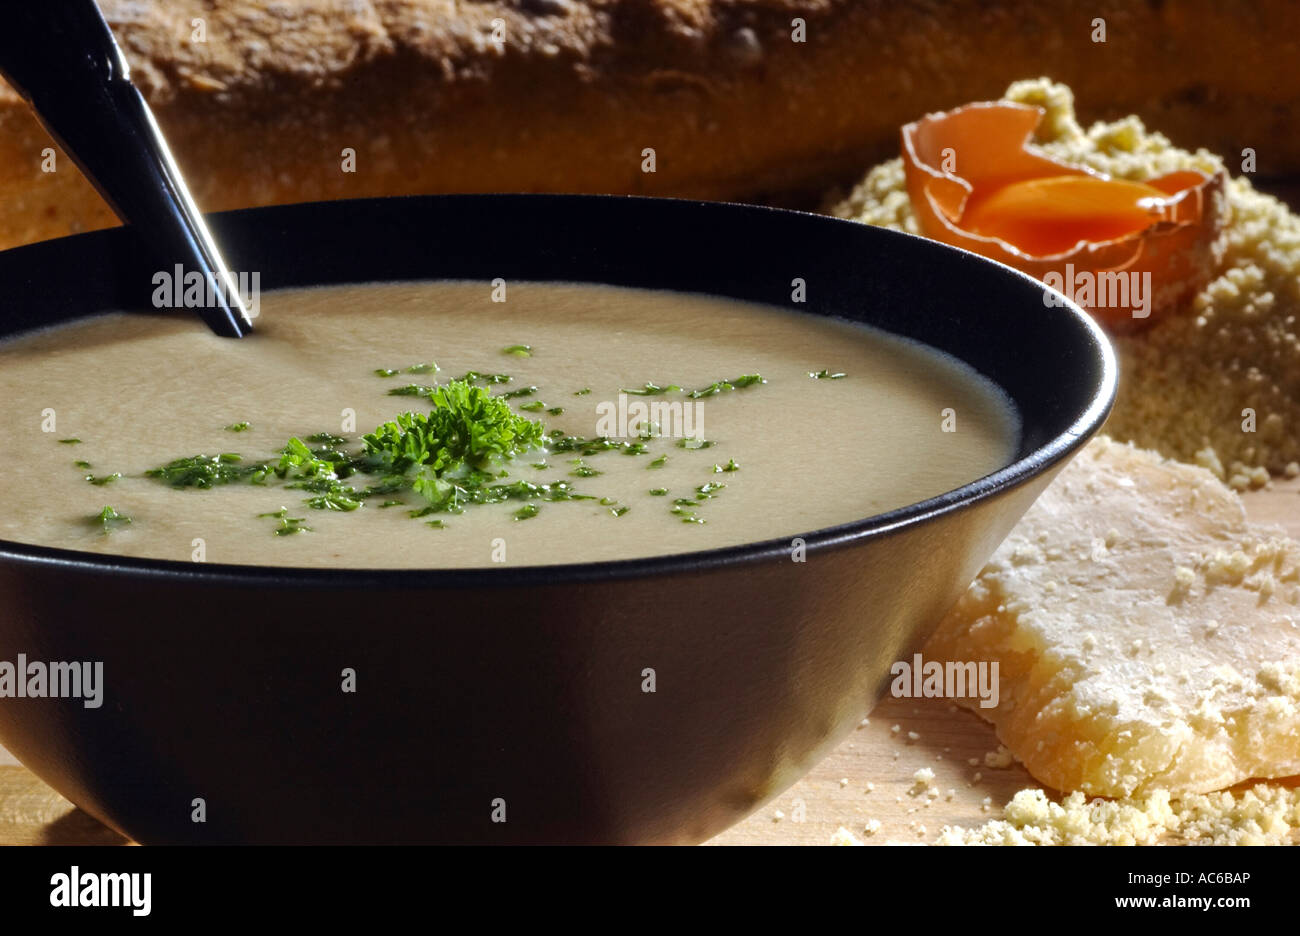 Straciatella alla Romana Italian egg drop soup with Parmesan cheese Stock Photo